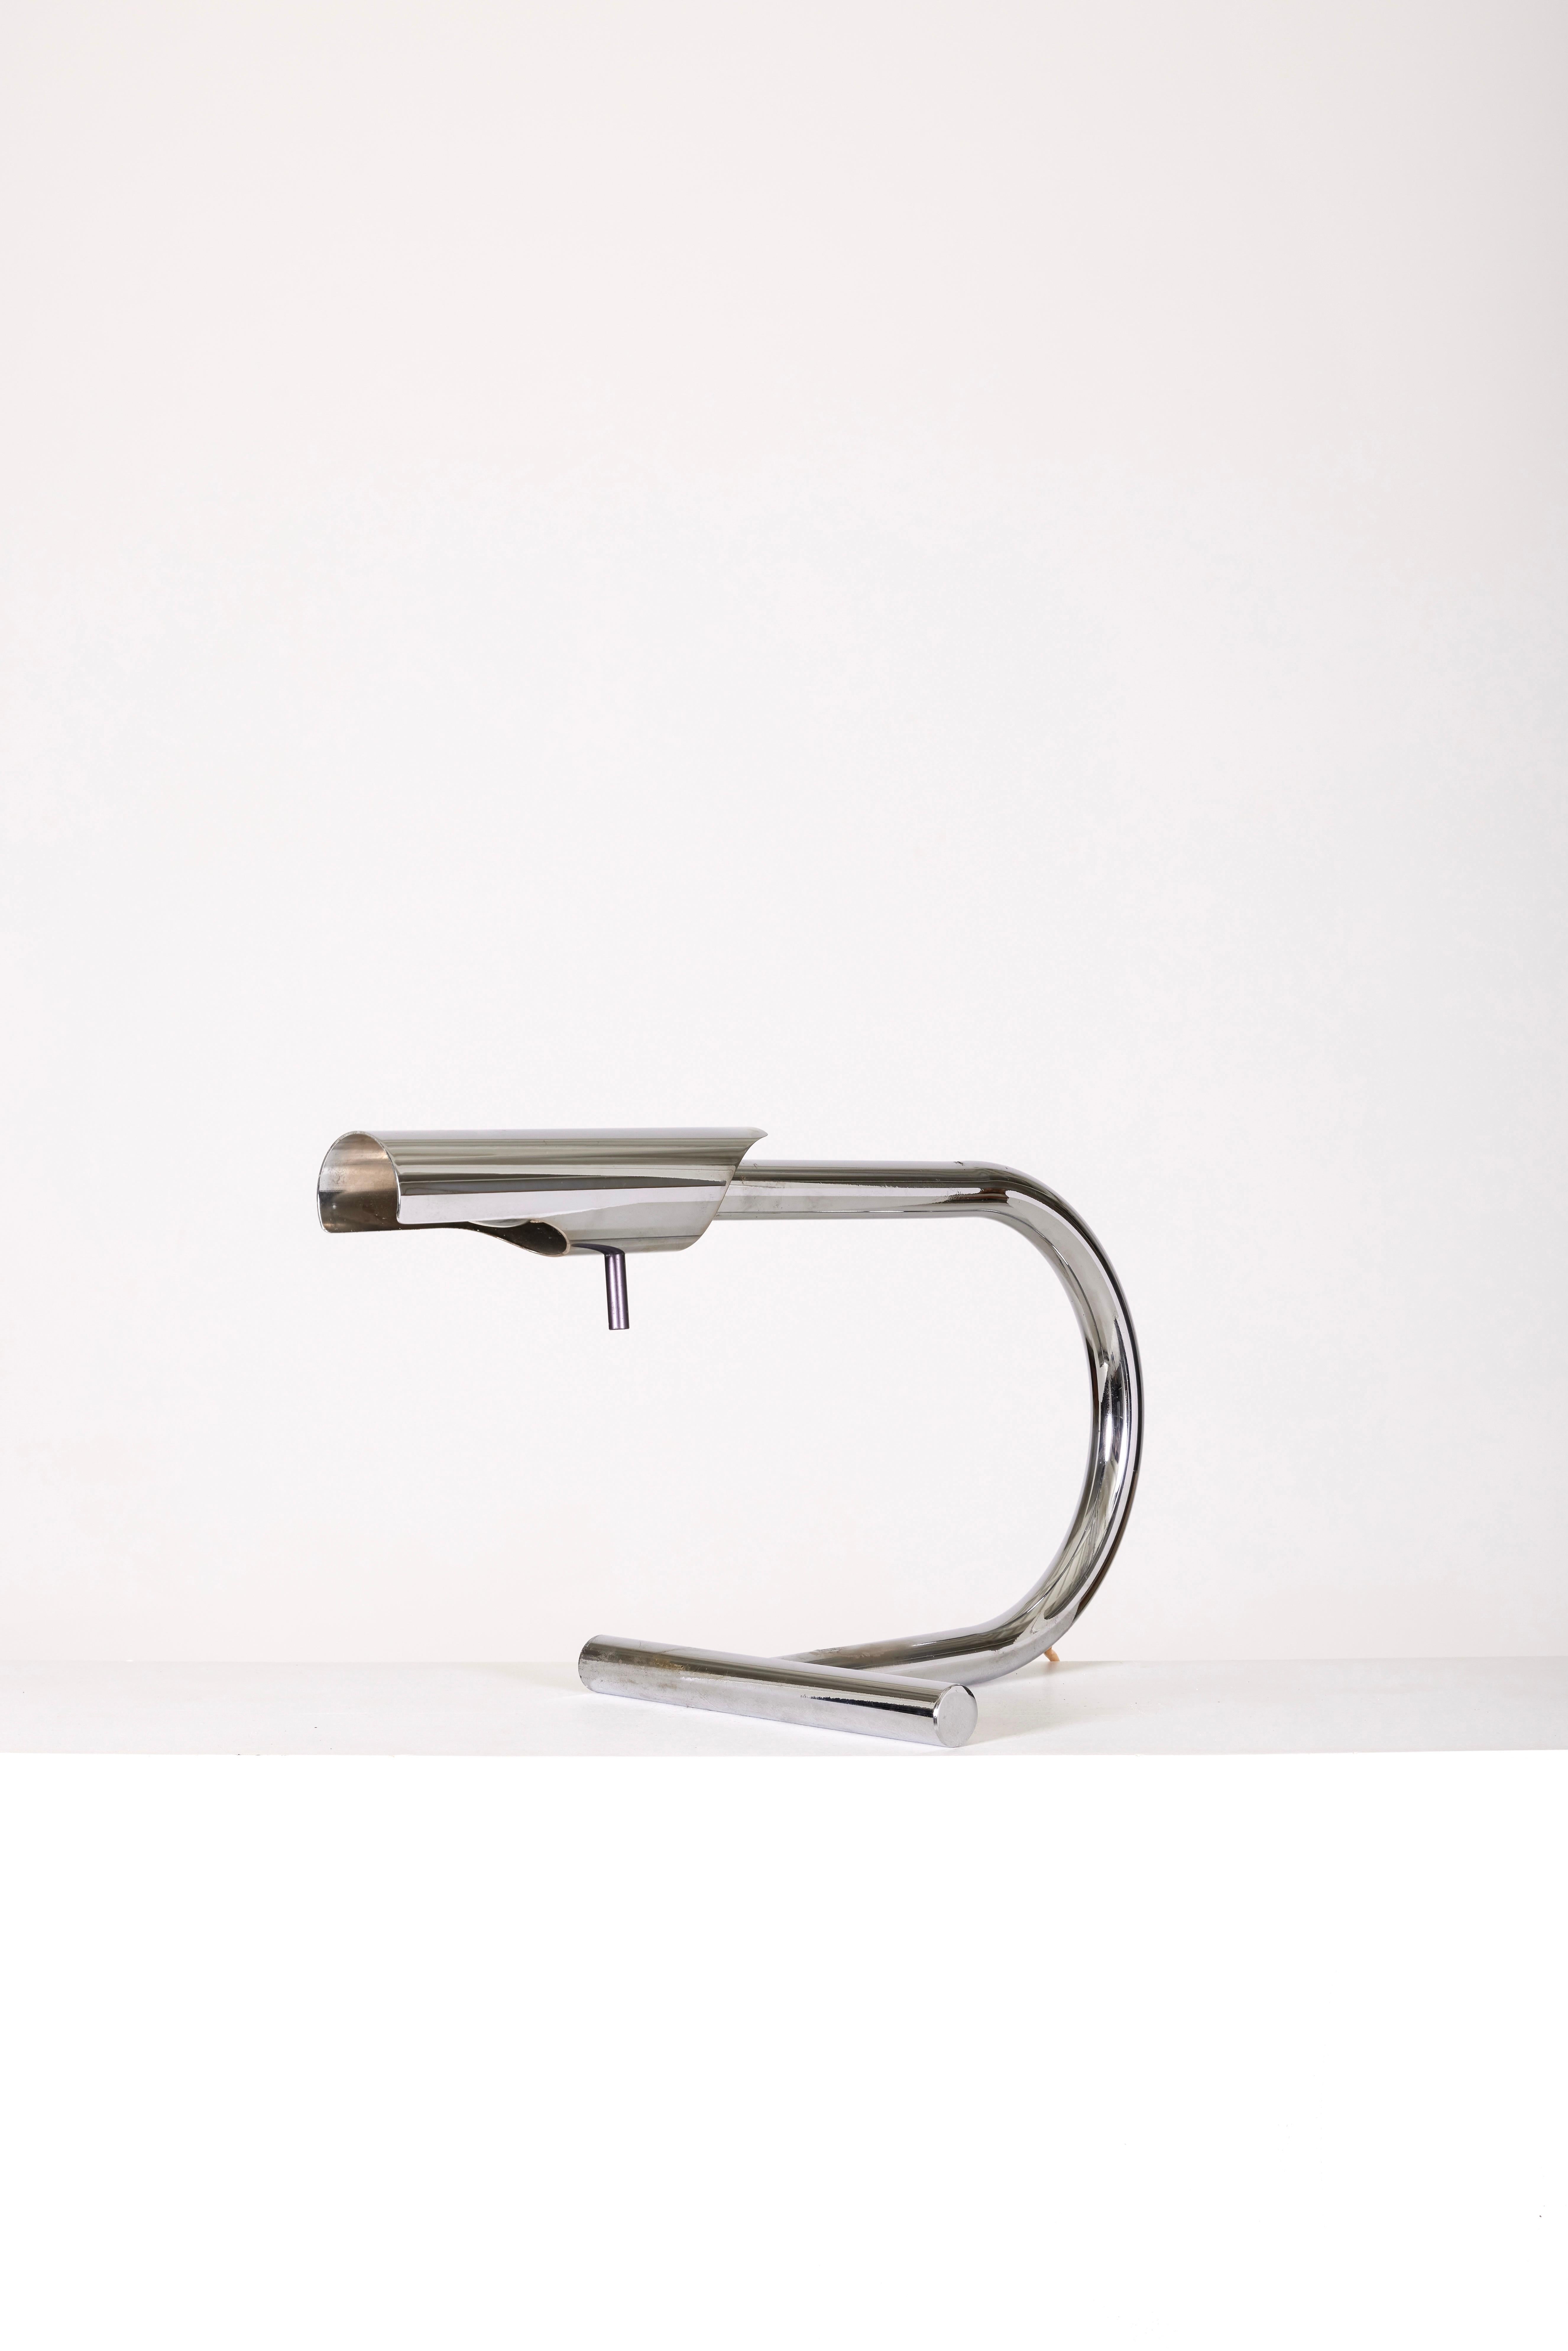 Schreibtischlampe aus verchromtem Metall des Designers Etienne Fermigier für Disderot, 1970er Jahre. Sichtbare Gebrauchsspuren, wie auf den Fotos zu sehen, sind zu beachten.
LP1268